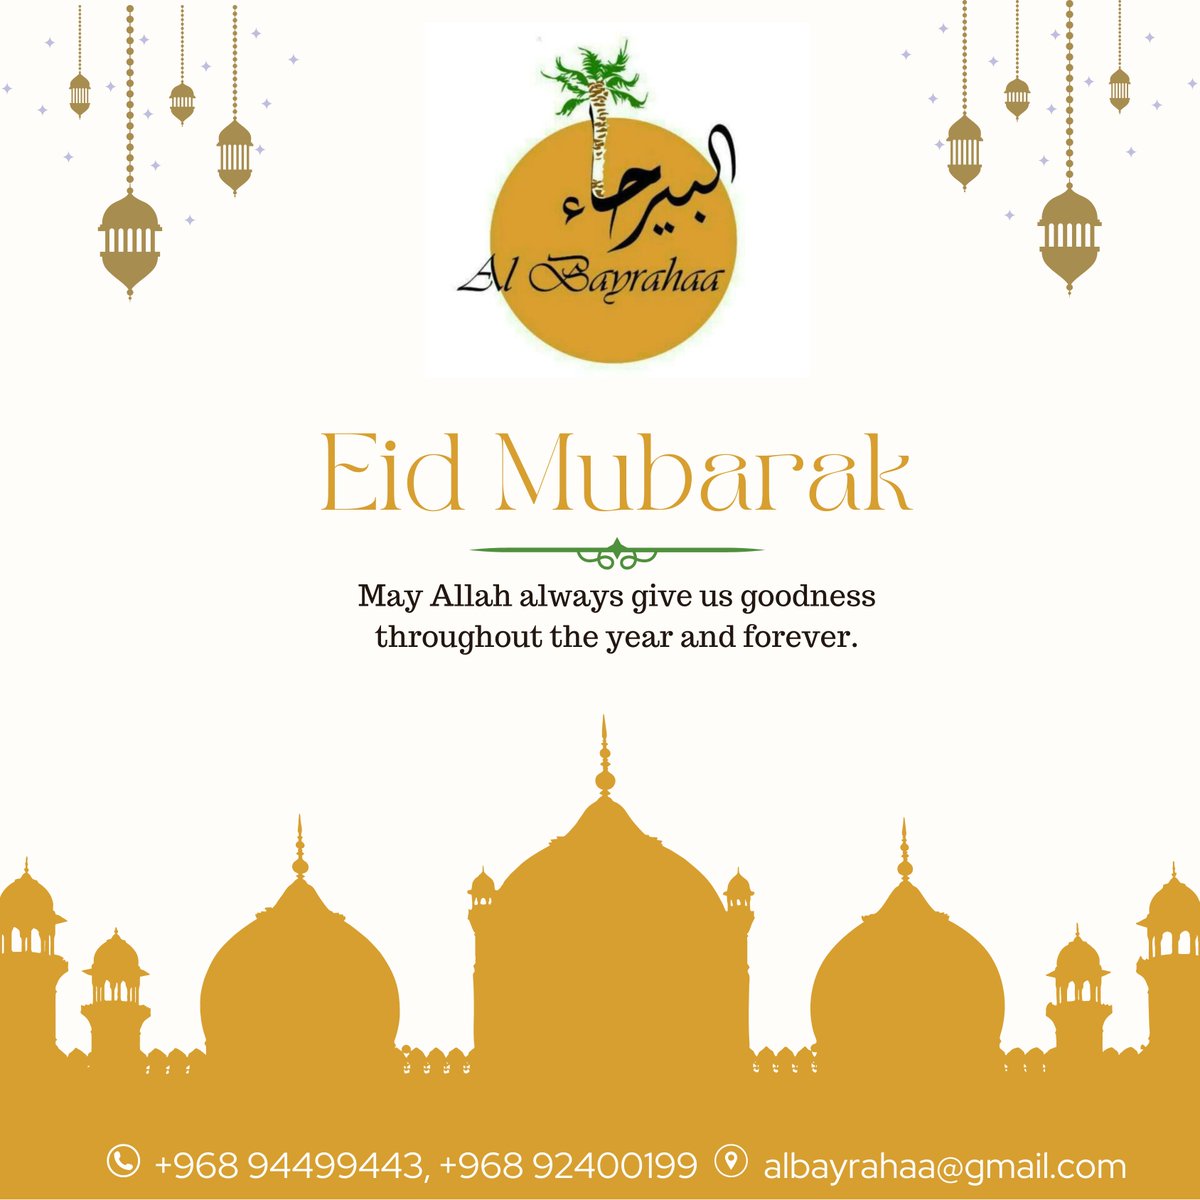 Wishing you a joyful and prosperous Eid celebration with your loved ones. Eid Mubarak!

Email : albayrahaa@gmail.com
Call Us : +968 94499443, +96892400199

#albayrahaa #albayrahaahotel #EidMubarak #EidAlFitr #BlessingsOfEid #CelebratingEid #EidWithFamily #JoyOfEid #EidGreetings